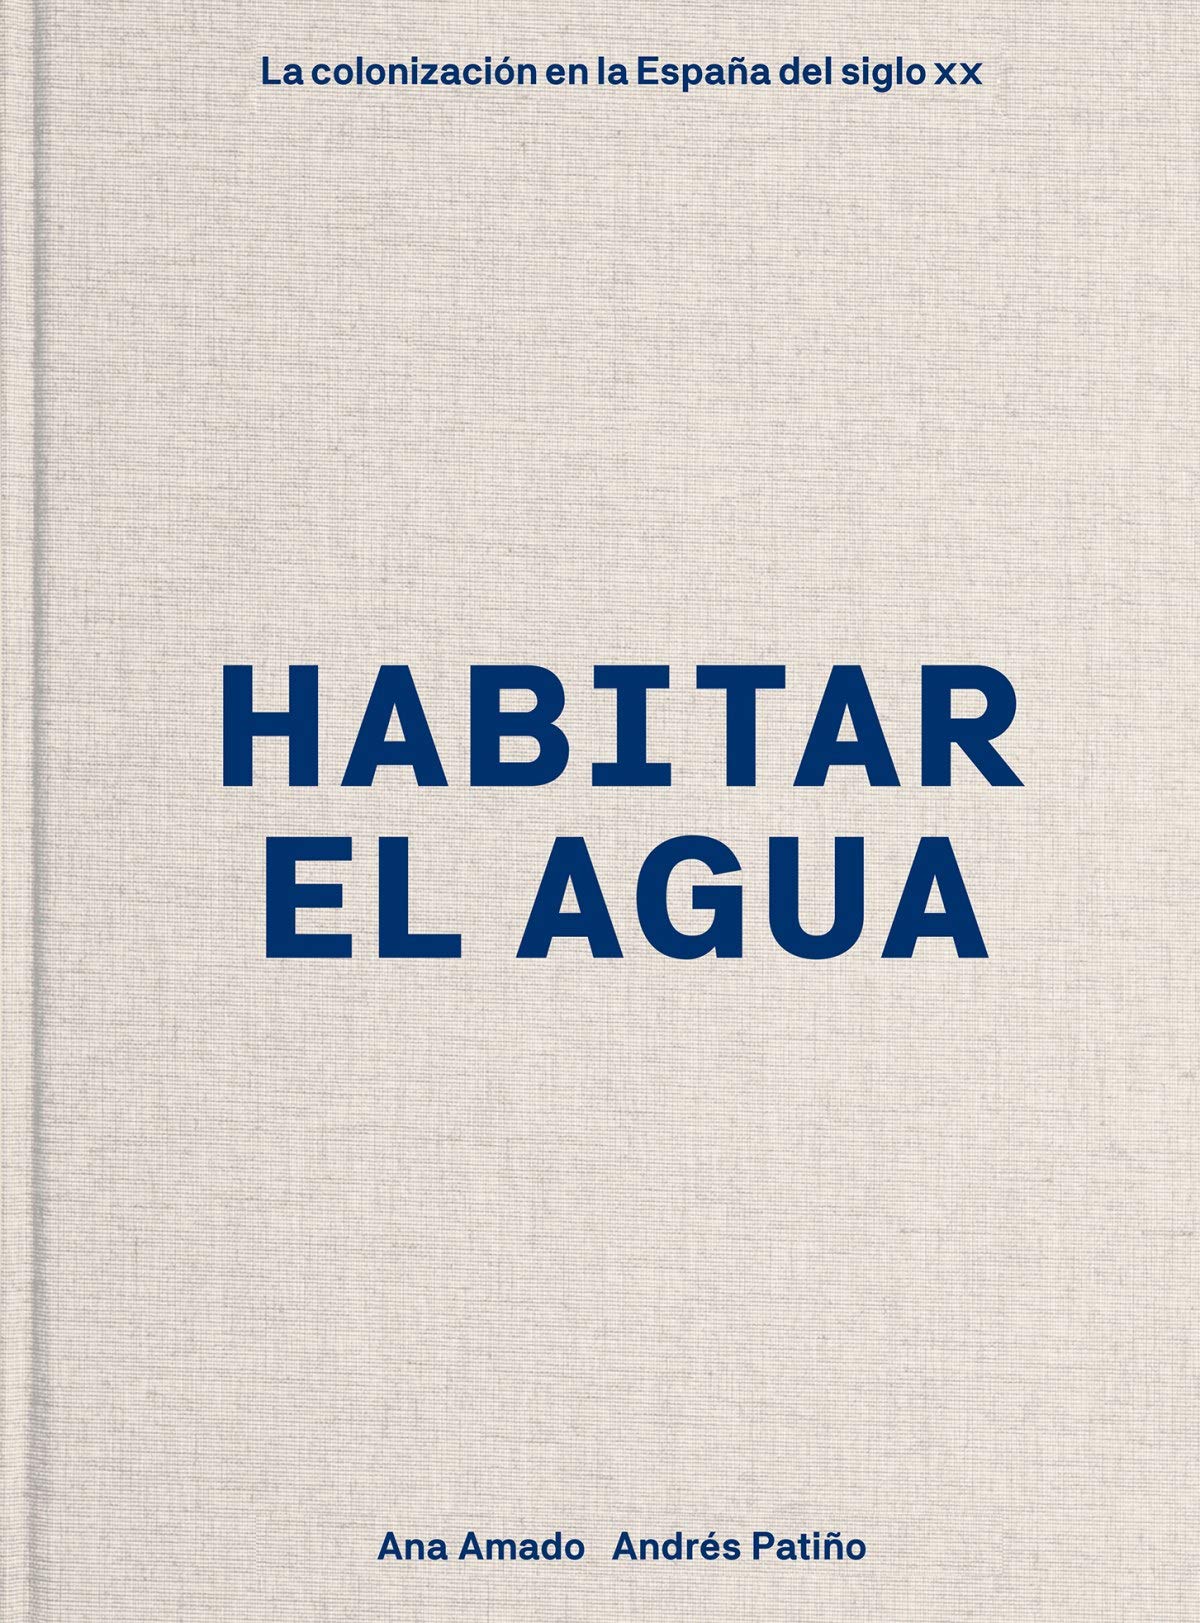 Imagen de portada del libro Habitar el agua